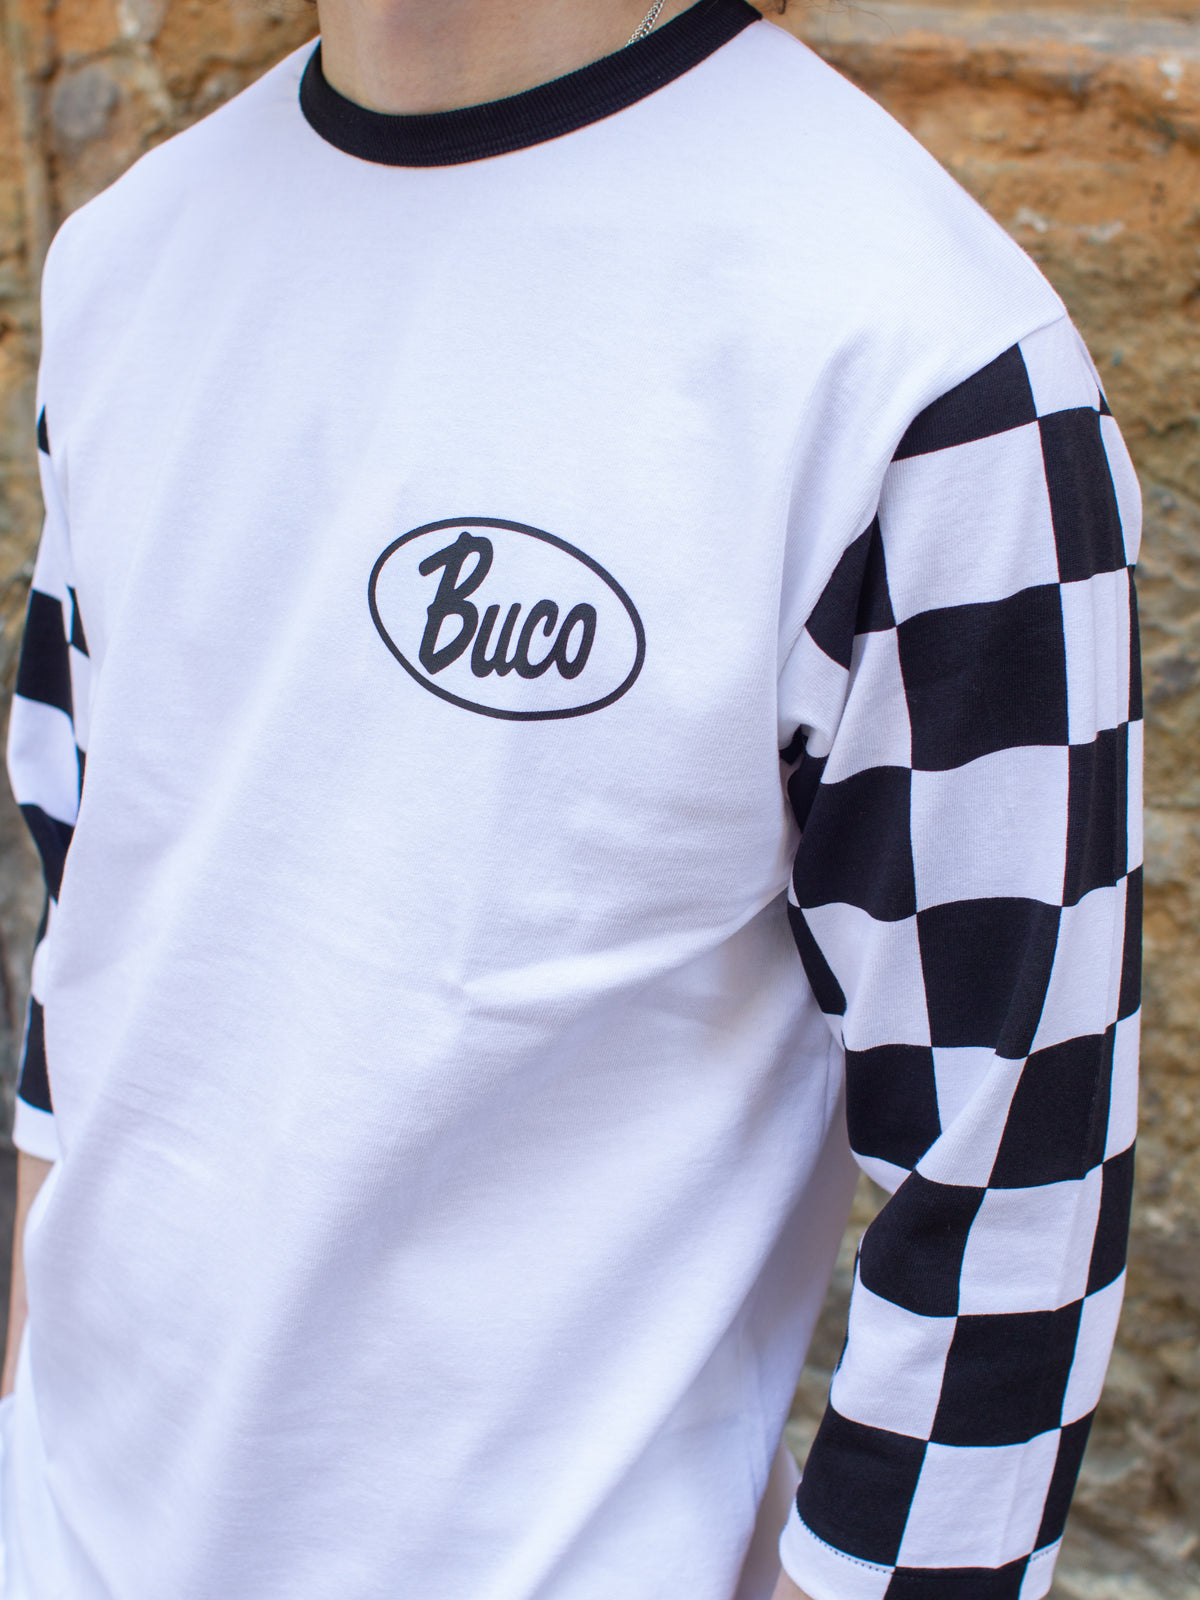 Buco BC22003 Baseball Tee Oval Logo/ Checkered